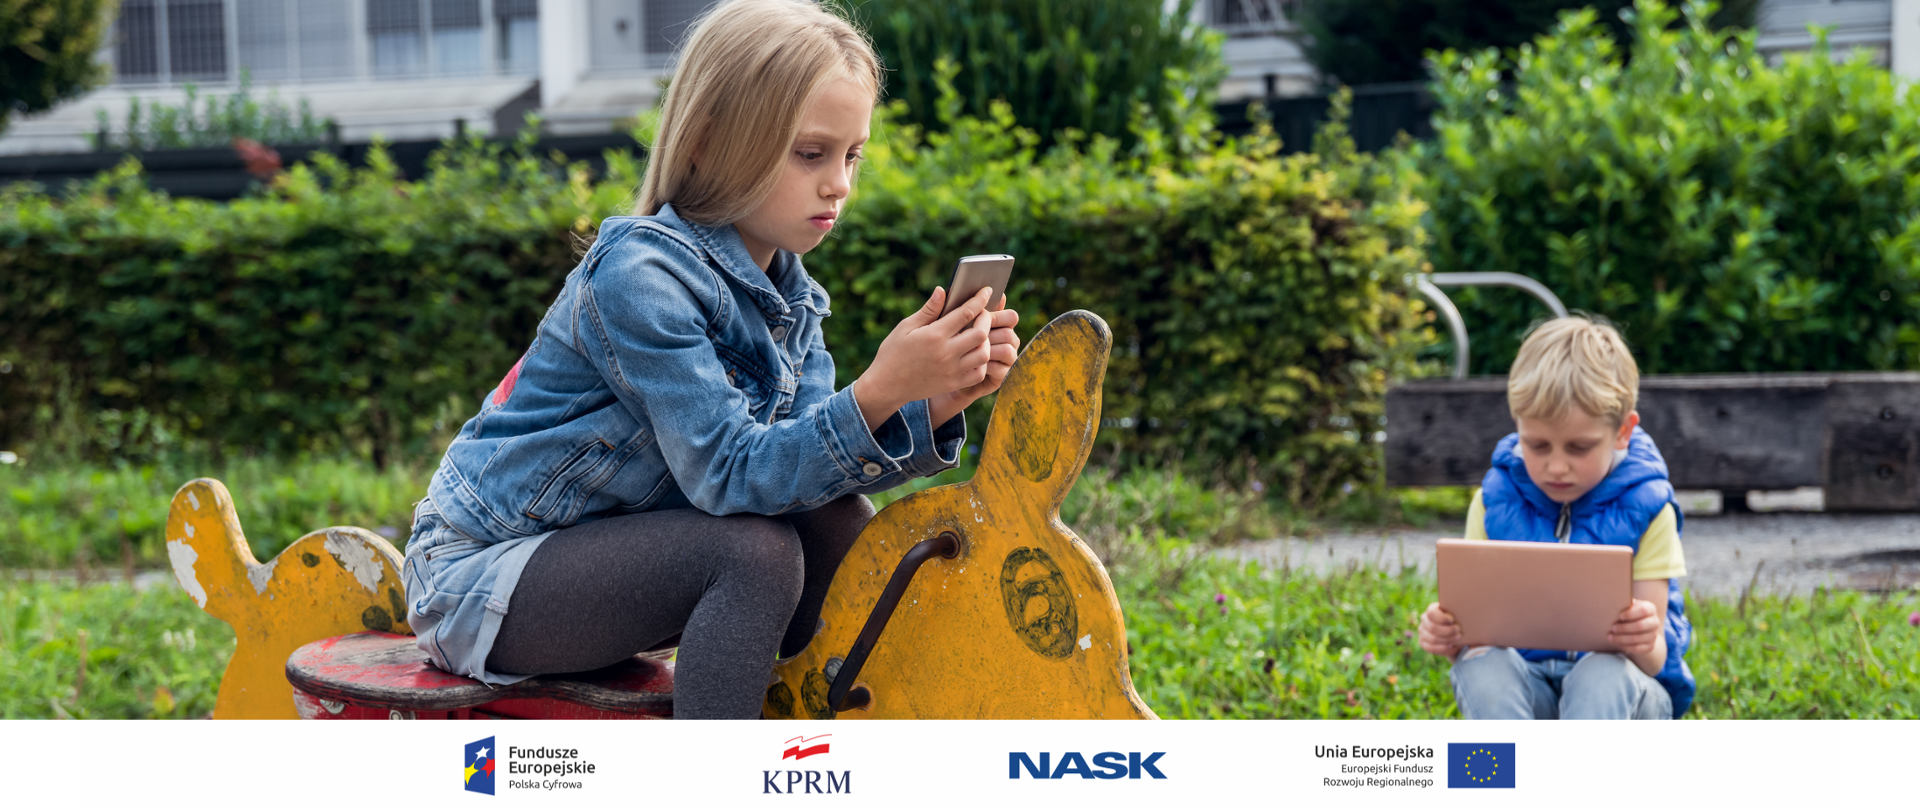 Dwoje dzieci - chłopiec i dziewczynka - na placu zabaw, siedzą na huśtawkach. Dziewczynka (na pierwszym planie) wpatrzona w ekran smartfona, chłopiec - w tableta.